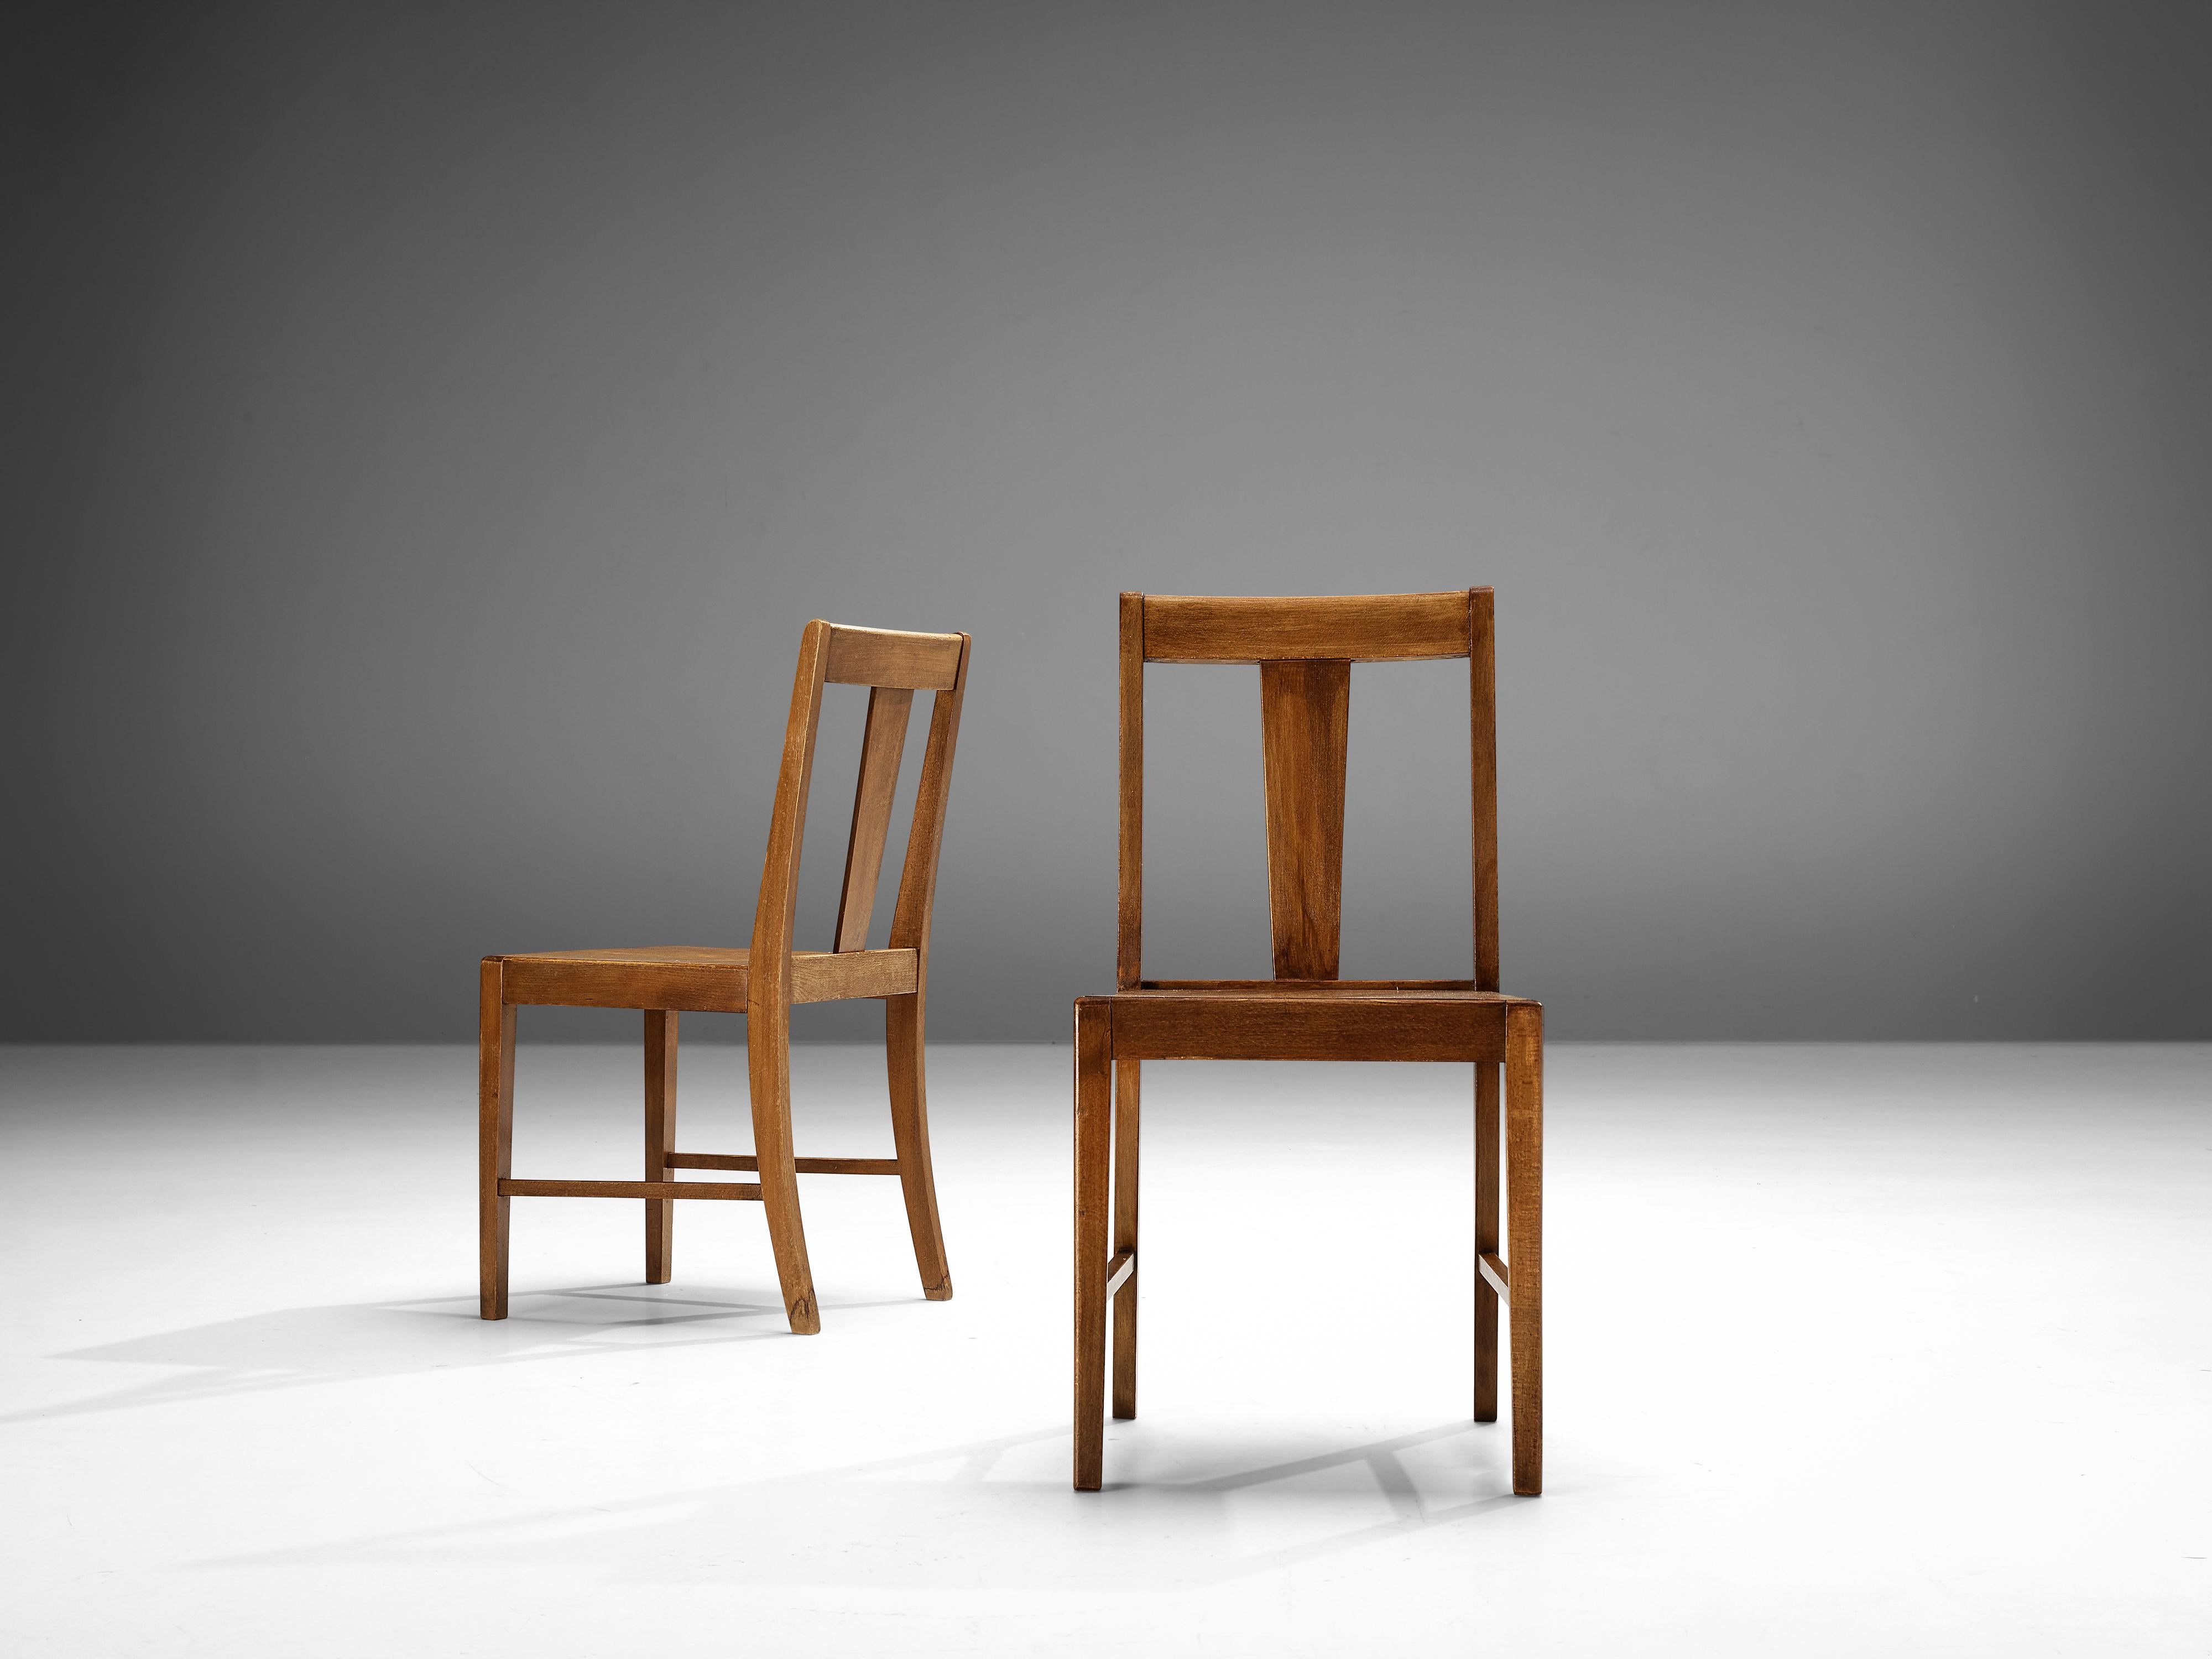 Esszimmerstühle, gebeizte Buche, Niederlande, 1940er Jahre

Dieses Paar Esszimmerstühle zeichnet sich nicht nur durch eine ausgewogene Rückenlehne und ein ausgewogenes Gestell aus. Das Gestell ist sehr strukturiert und stabil, was auch an den Beinen